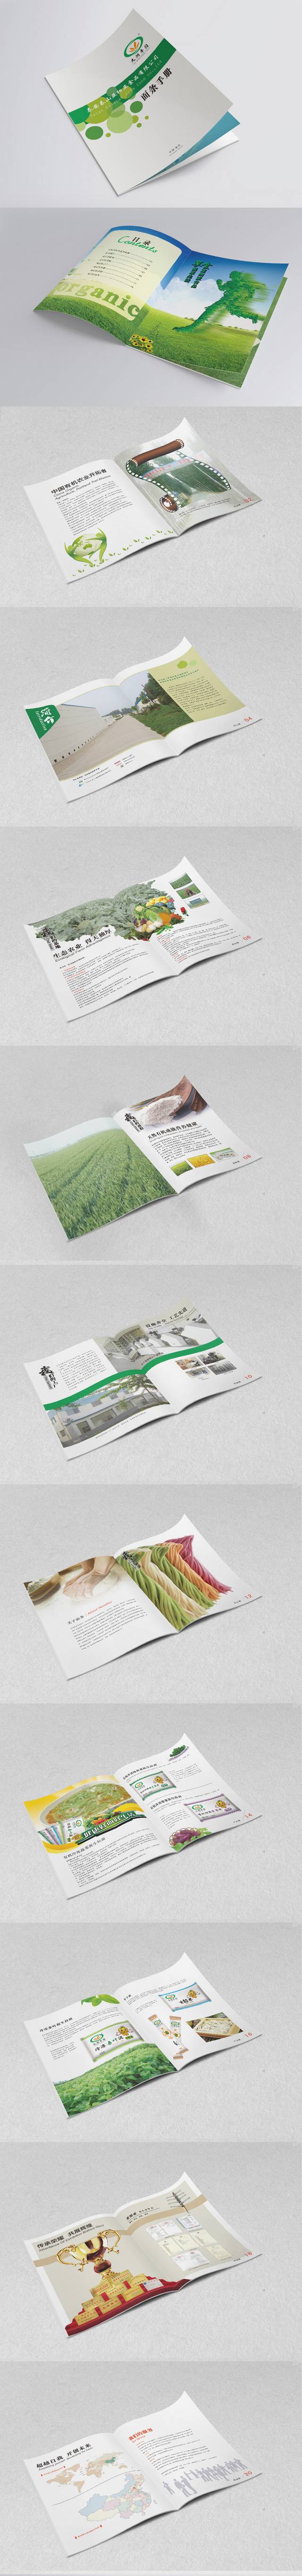 农业设备宣传画册